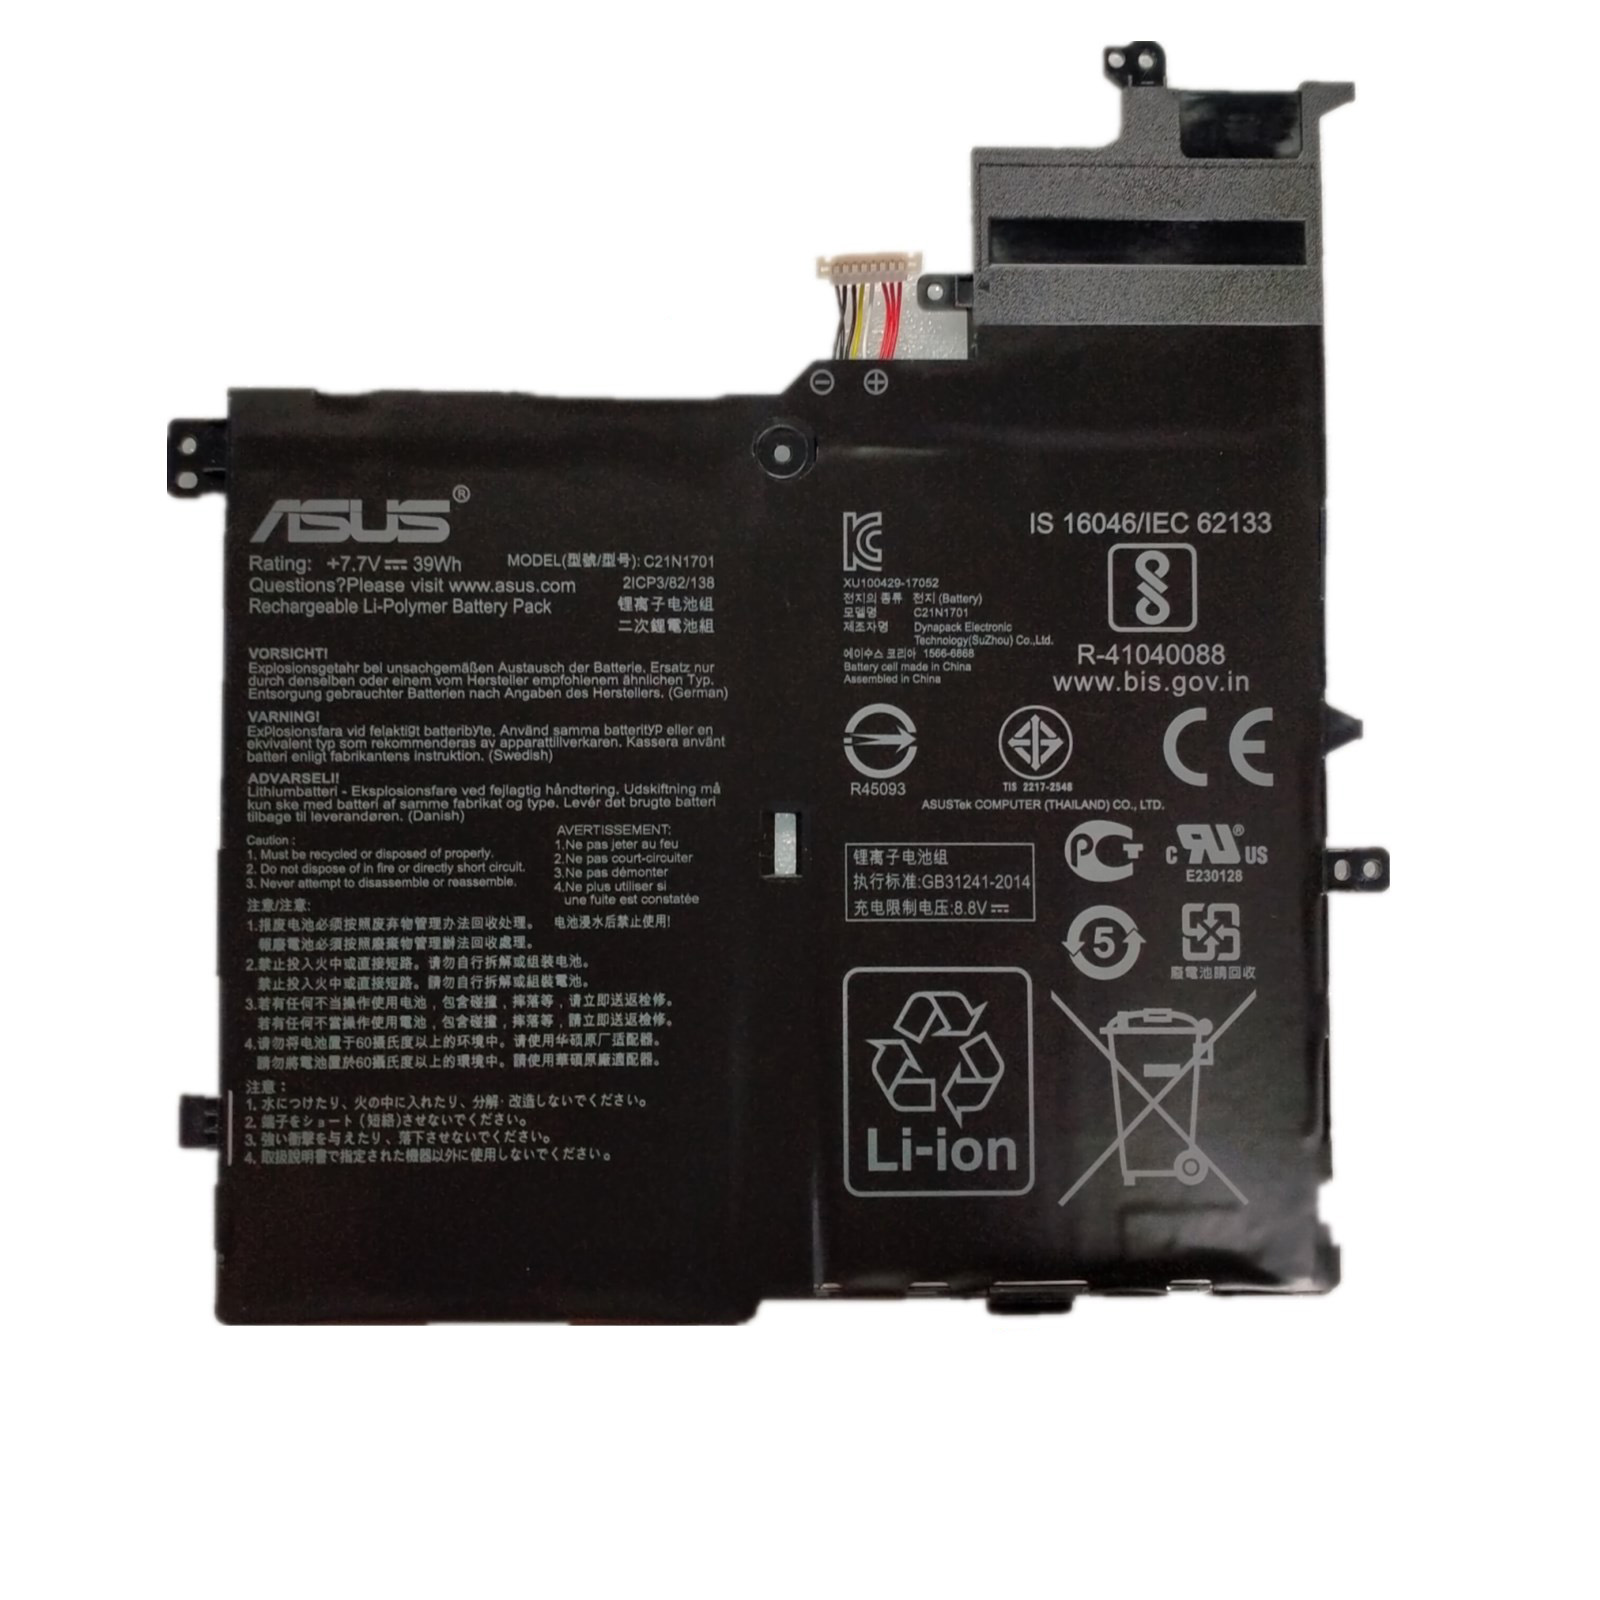 Asus VivoBook S14 S406UA-BM290T 7.7V 39Wh 5070mAh Battery